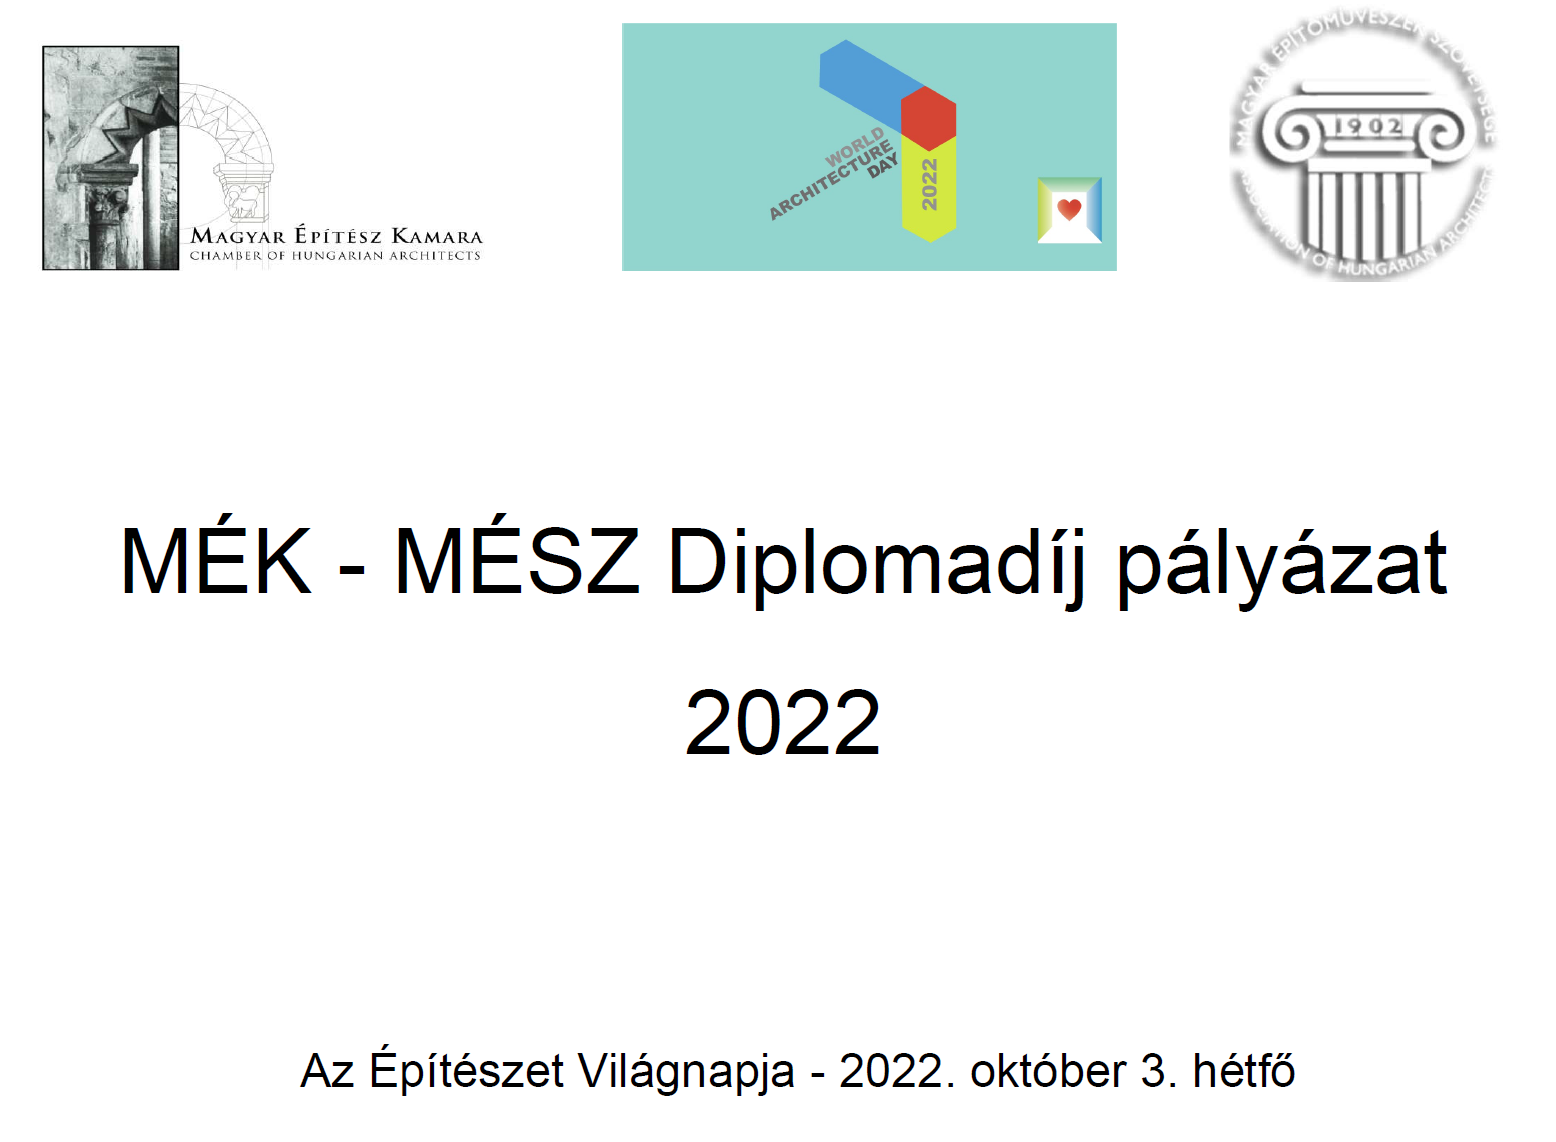 MÉK - MÉSZ Diplomadíj 2022 pályázat eredménye és laudációk